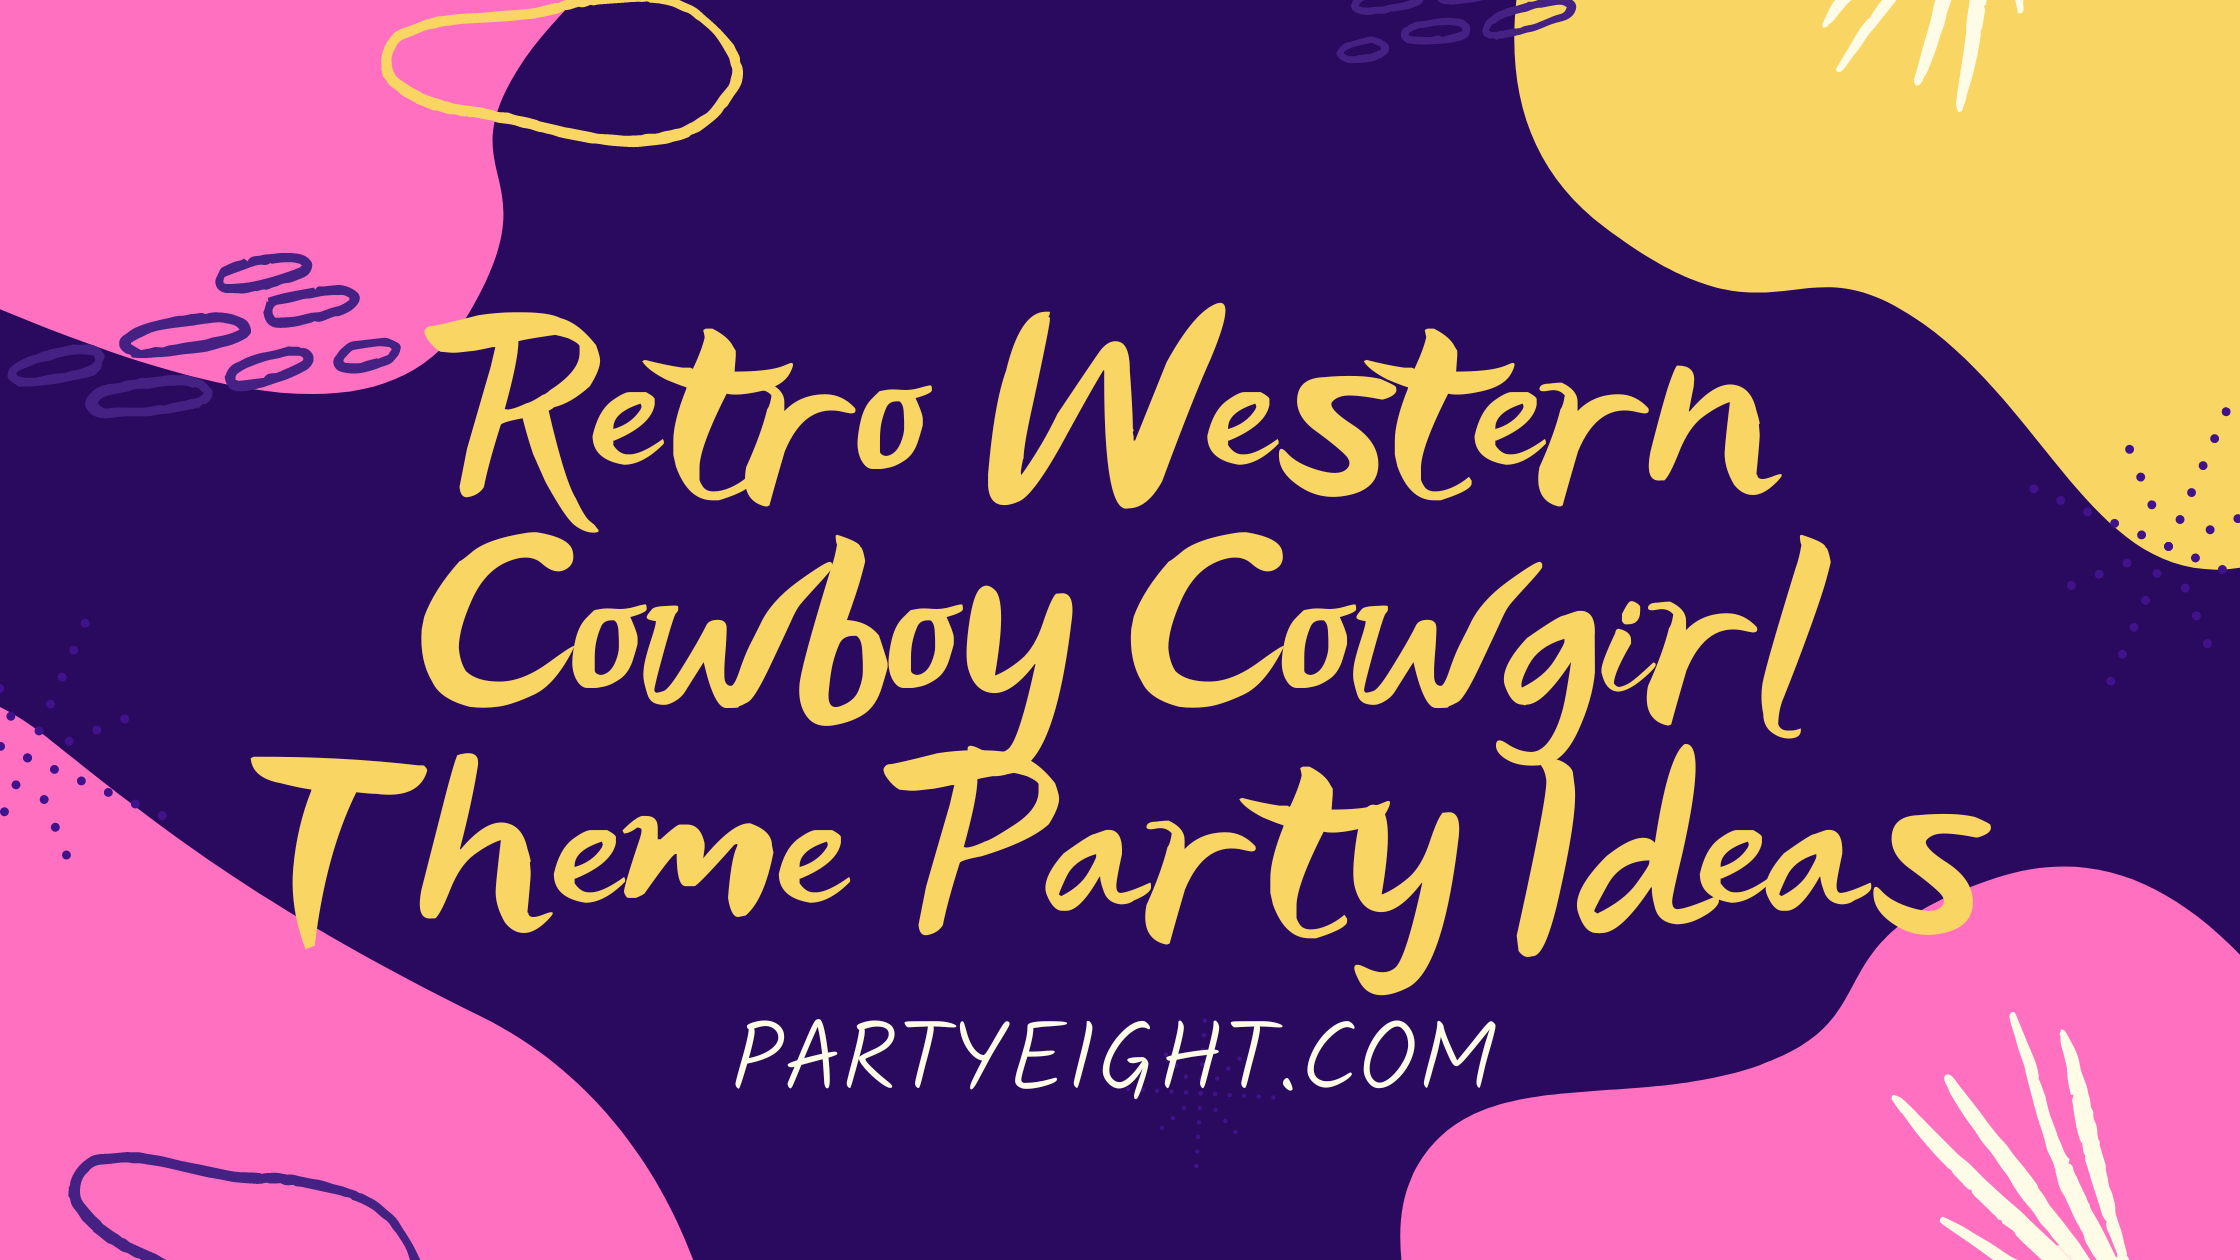 Retro Western Cowboy Cowgirl Theme Party Ideas